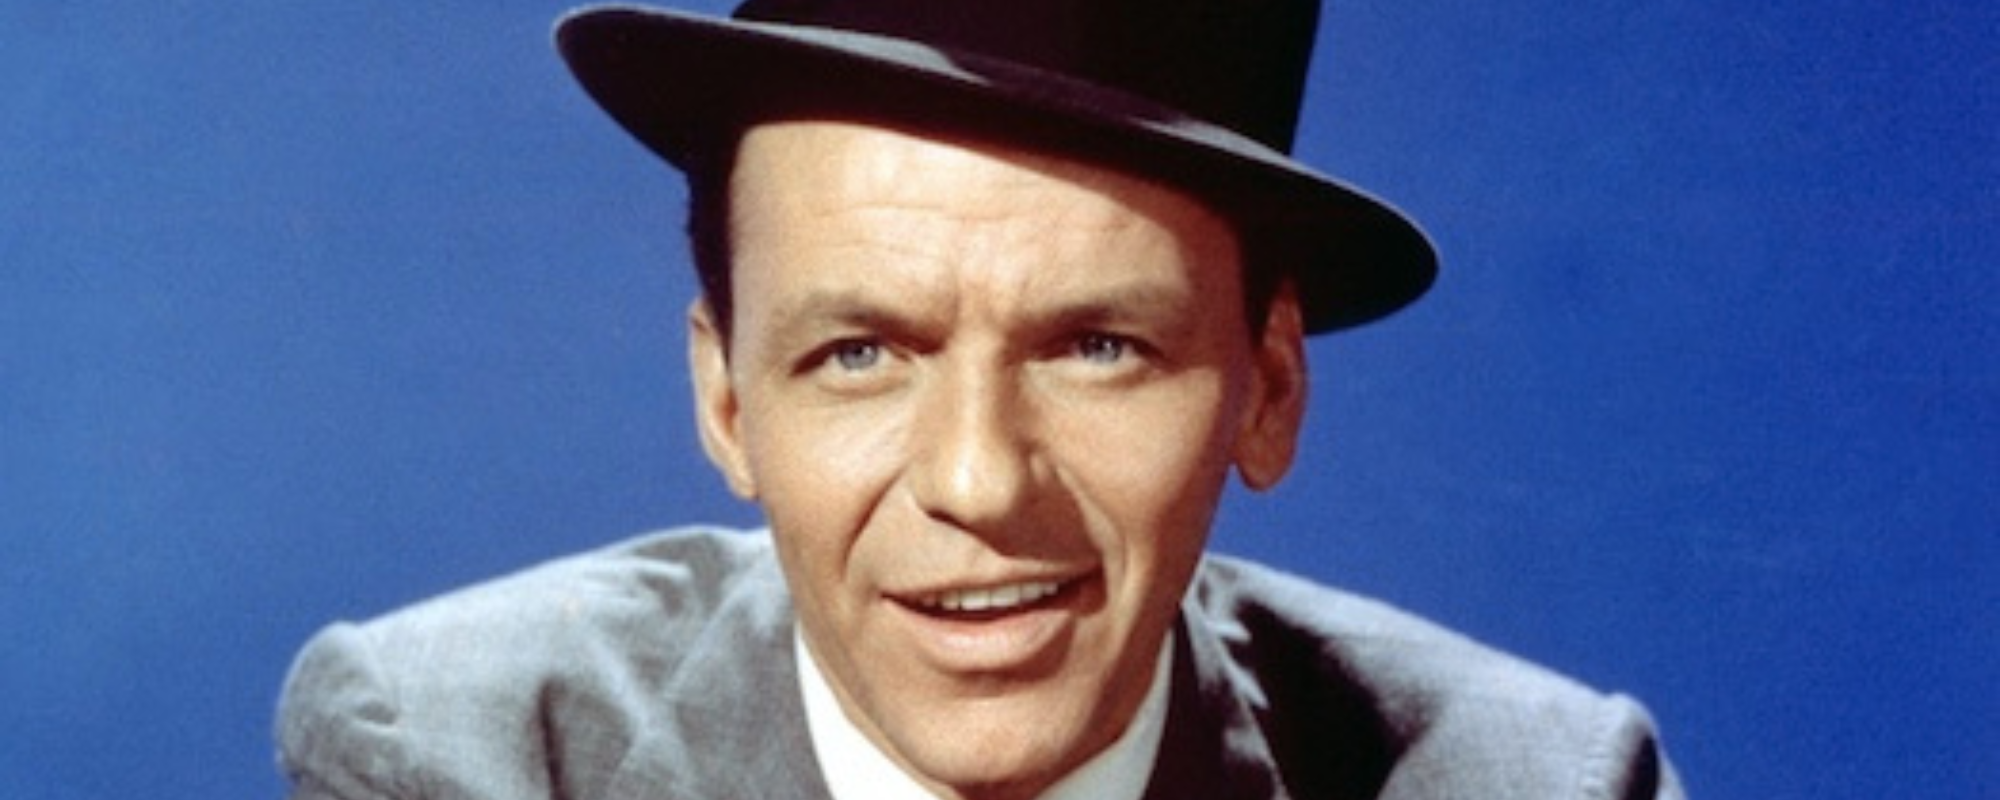 Frank Sinatra’s Extensive ‘Platinum’ Album Celebrates 70th Anniversary of His Capitol-Era Recordings